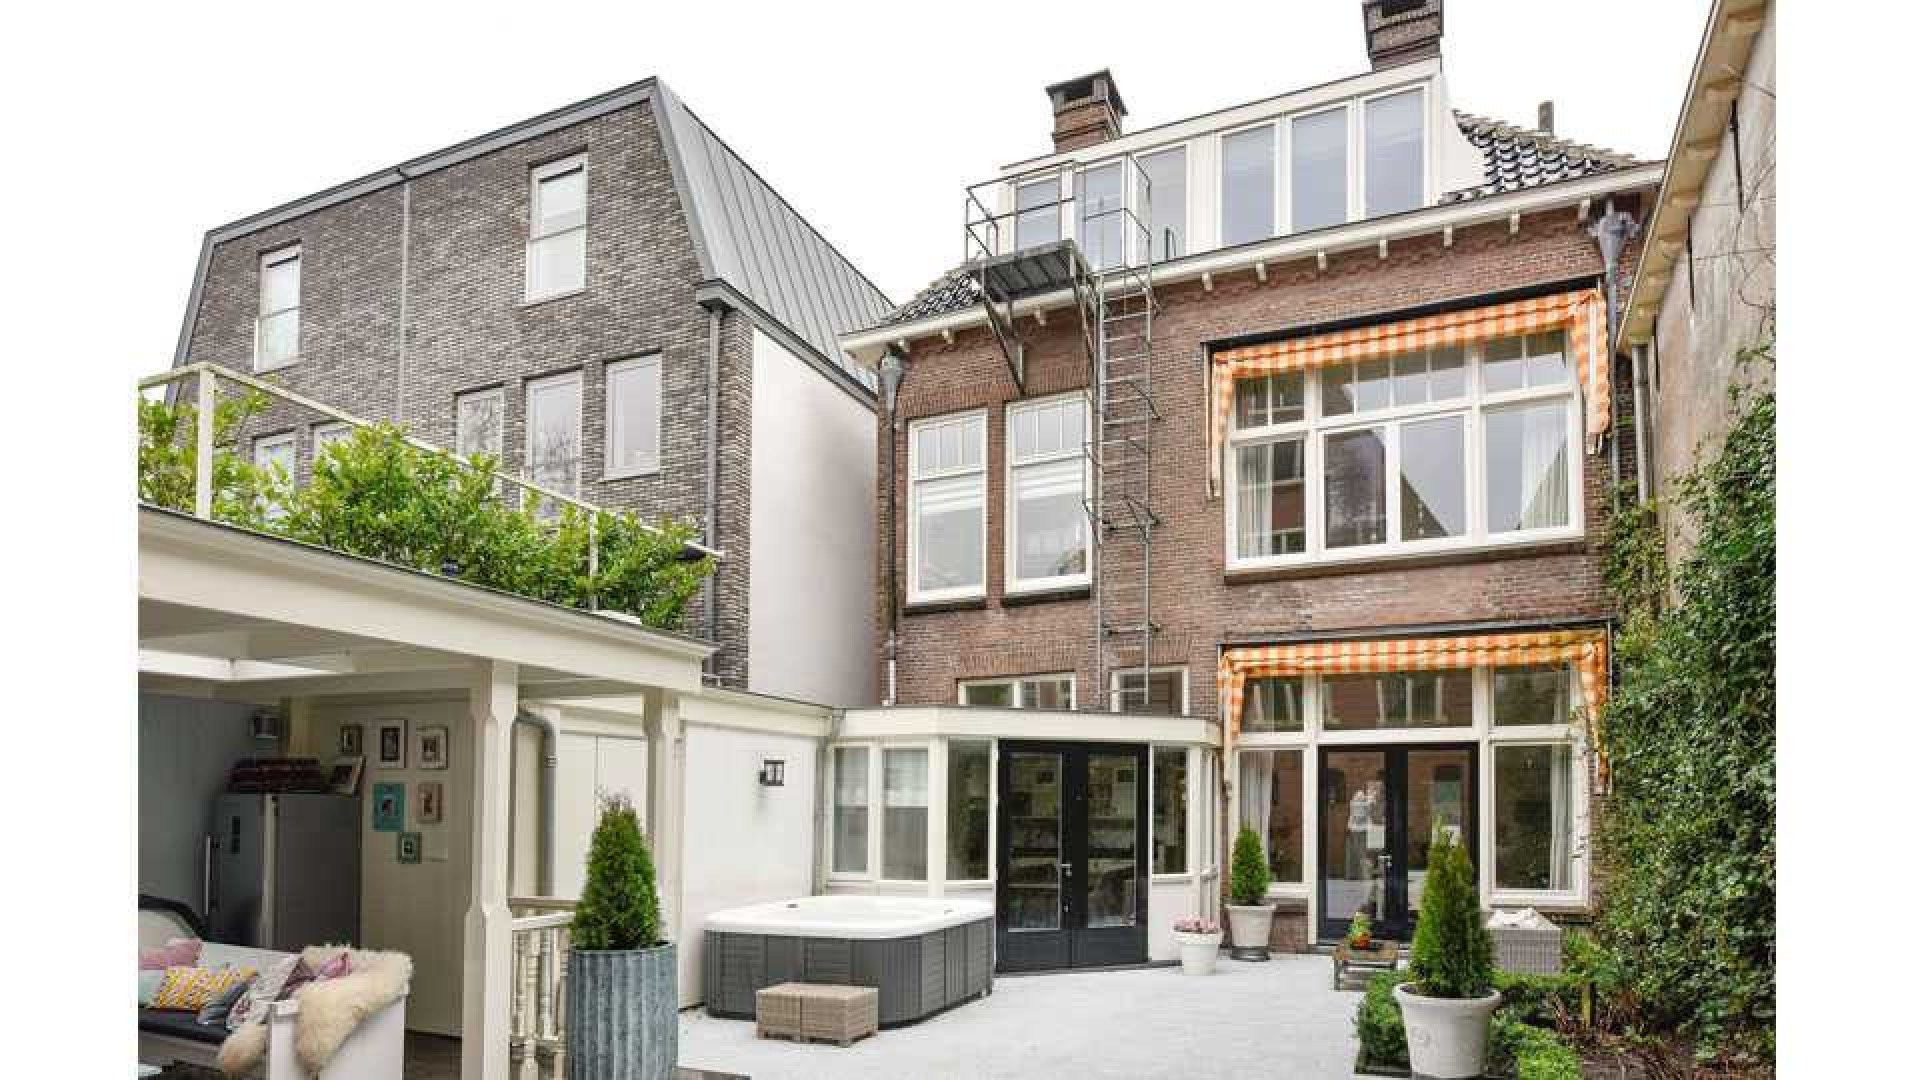 Sonja Bakker verkoopt haar huis in Hoorn behoorlijk onder de vraagprijs. Zie foto's 10